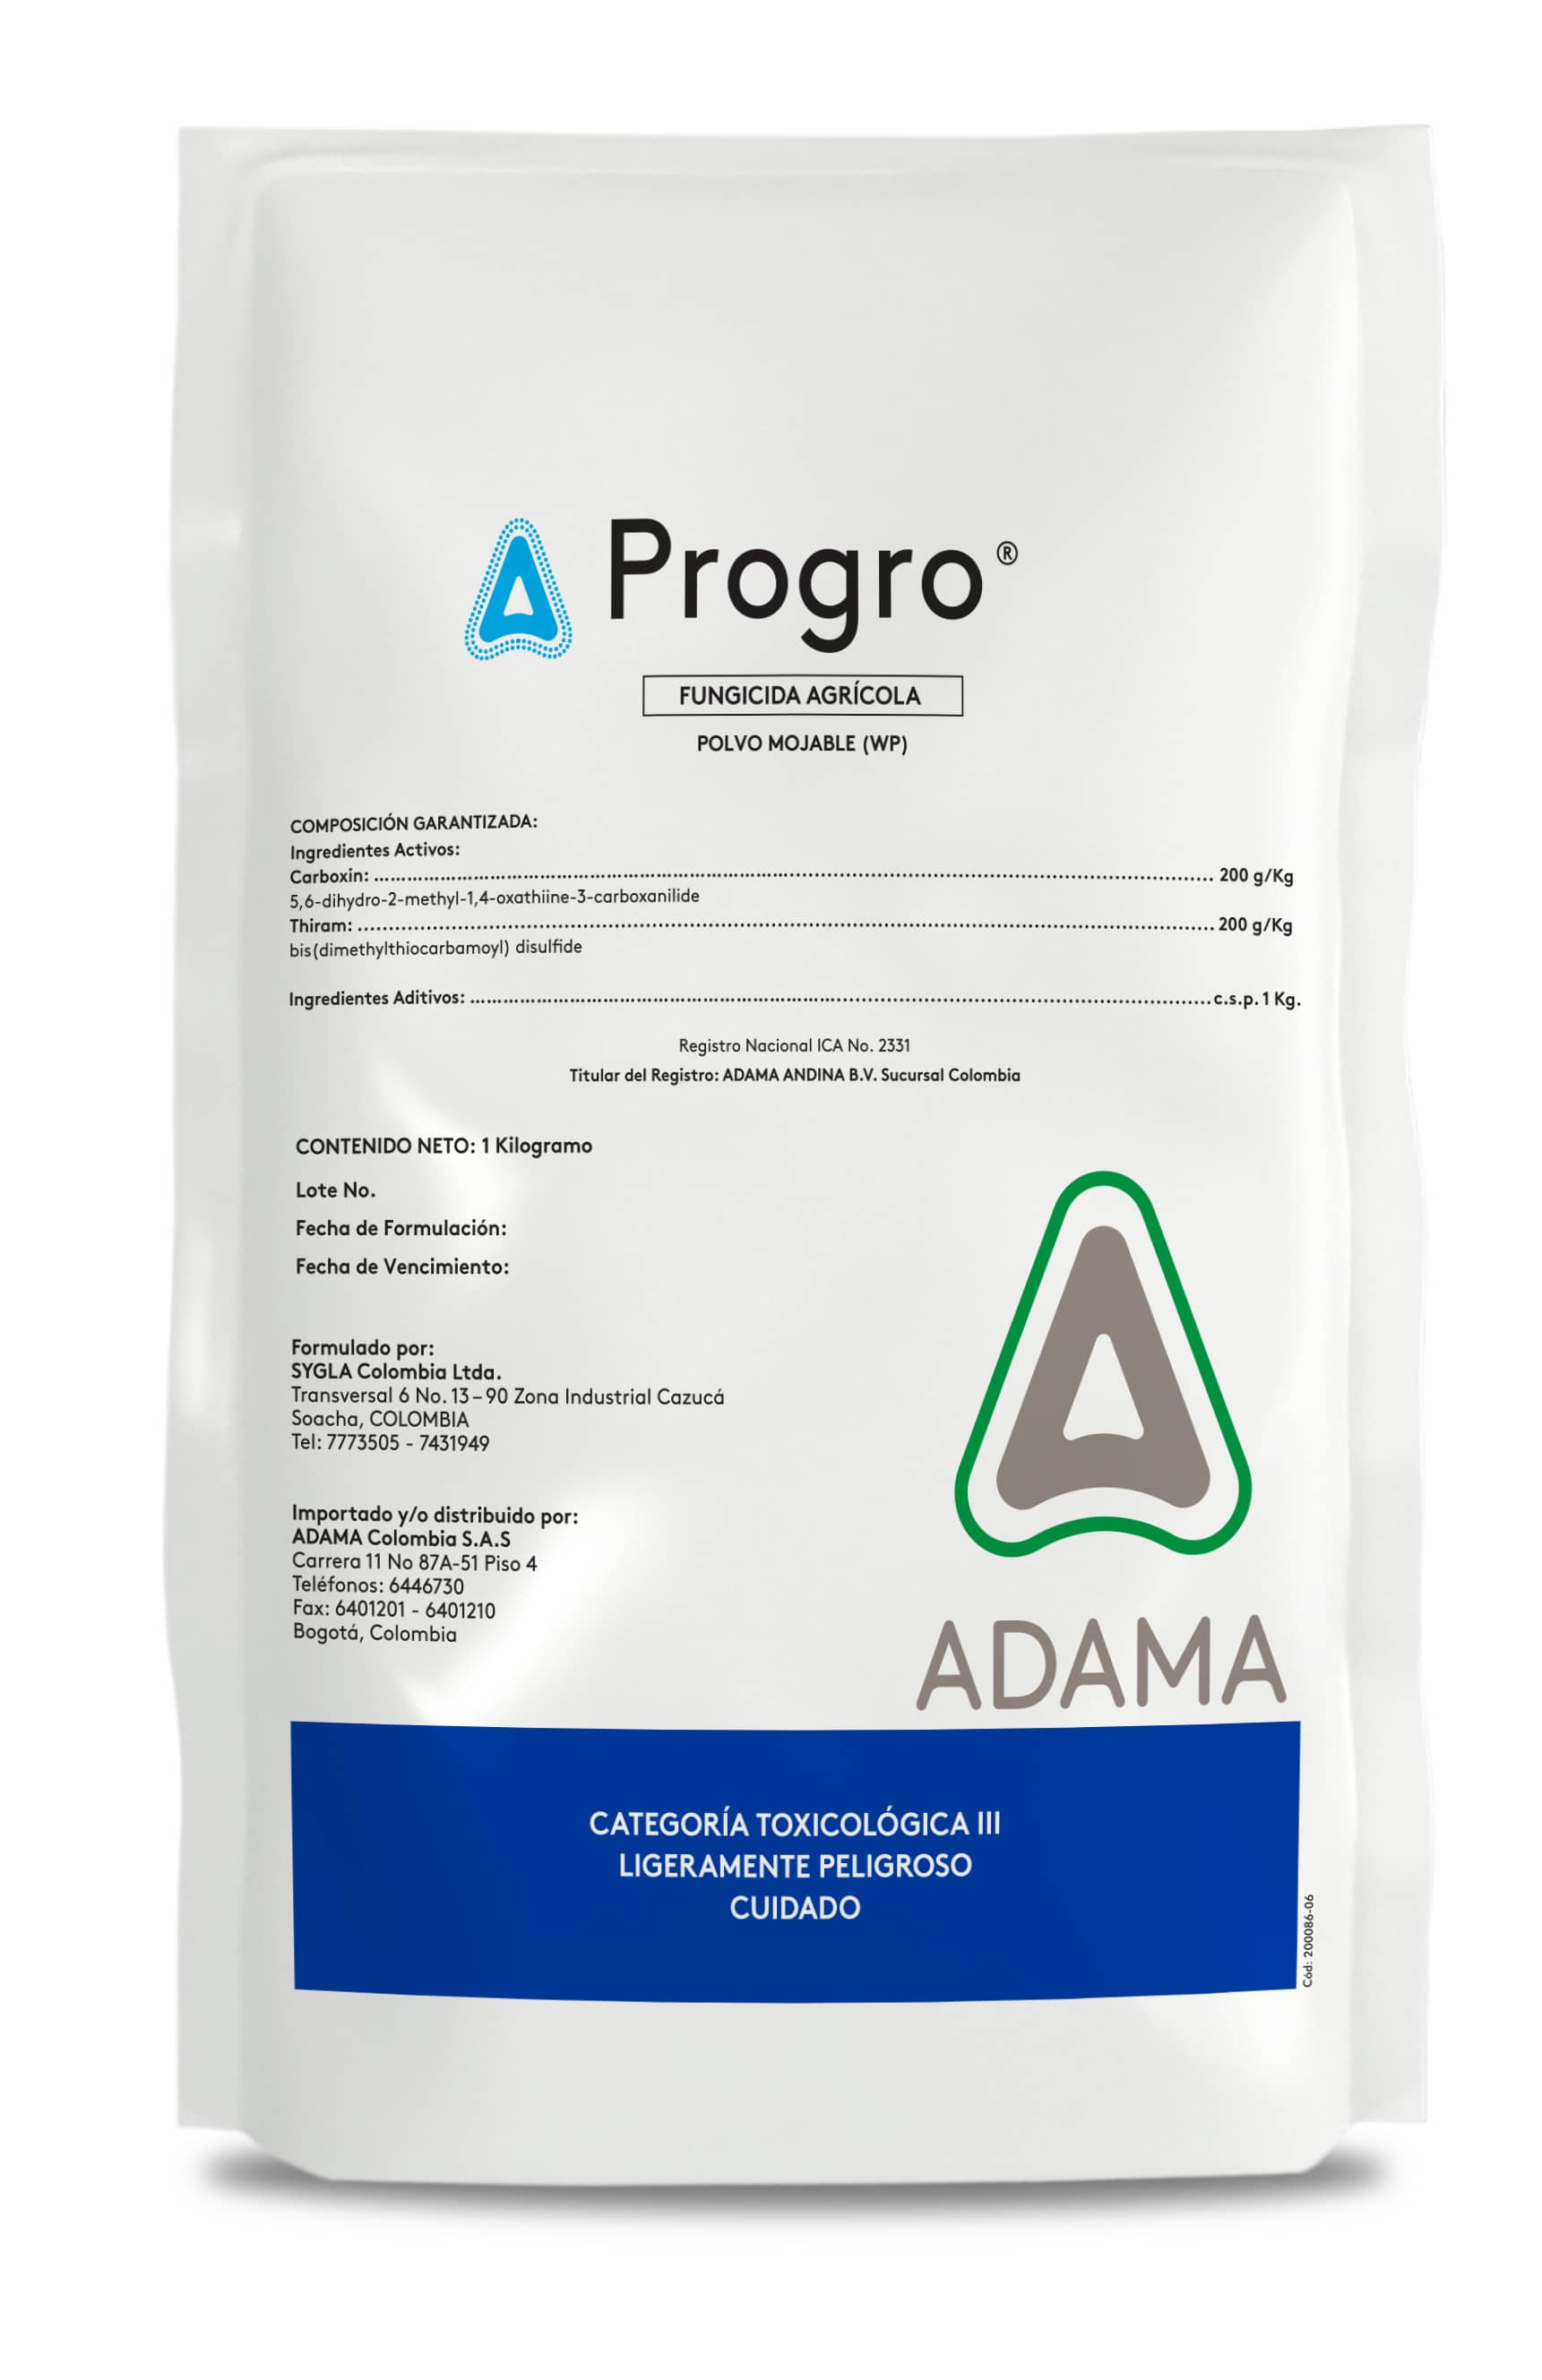 Fungicida Progro 20-20 x 1 Kg - Adama